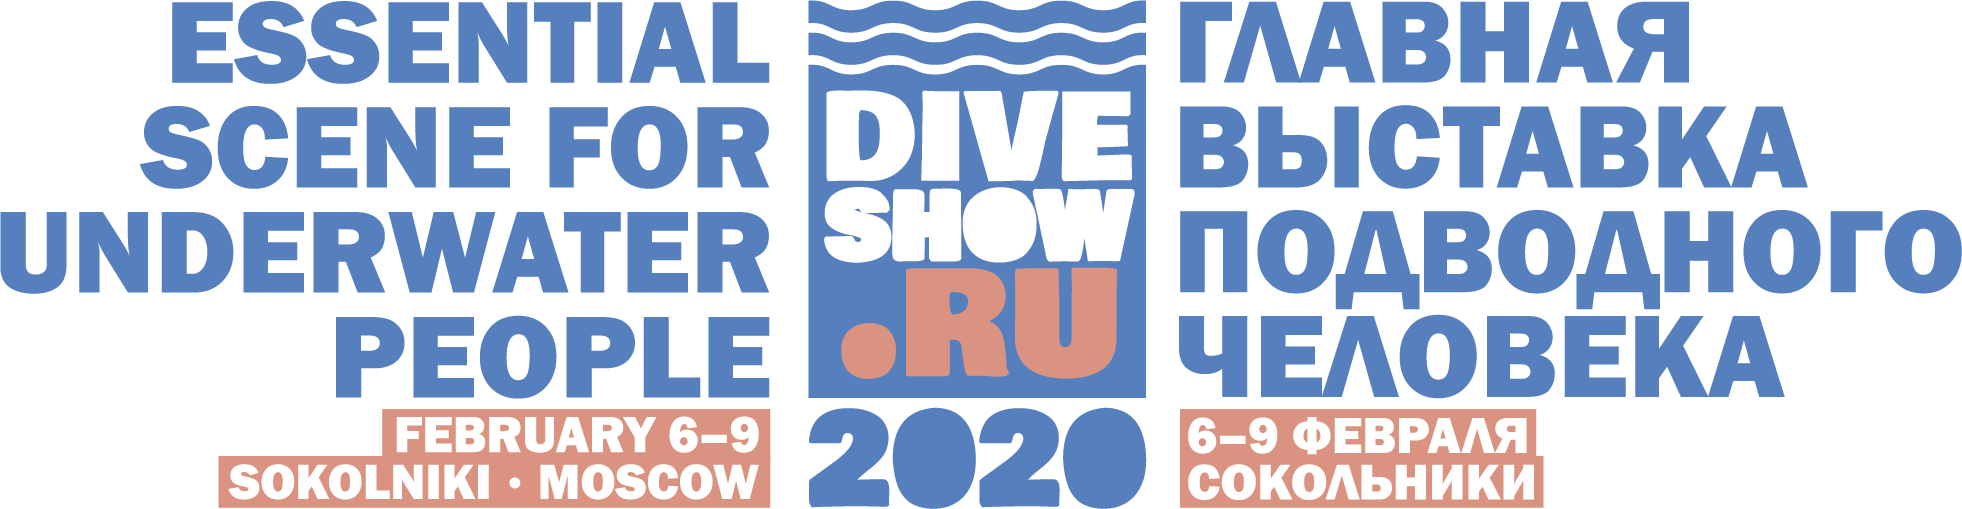 Moscow Dive Show 2020 пройдет с 6 по 9 февраля в Москве